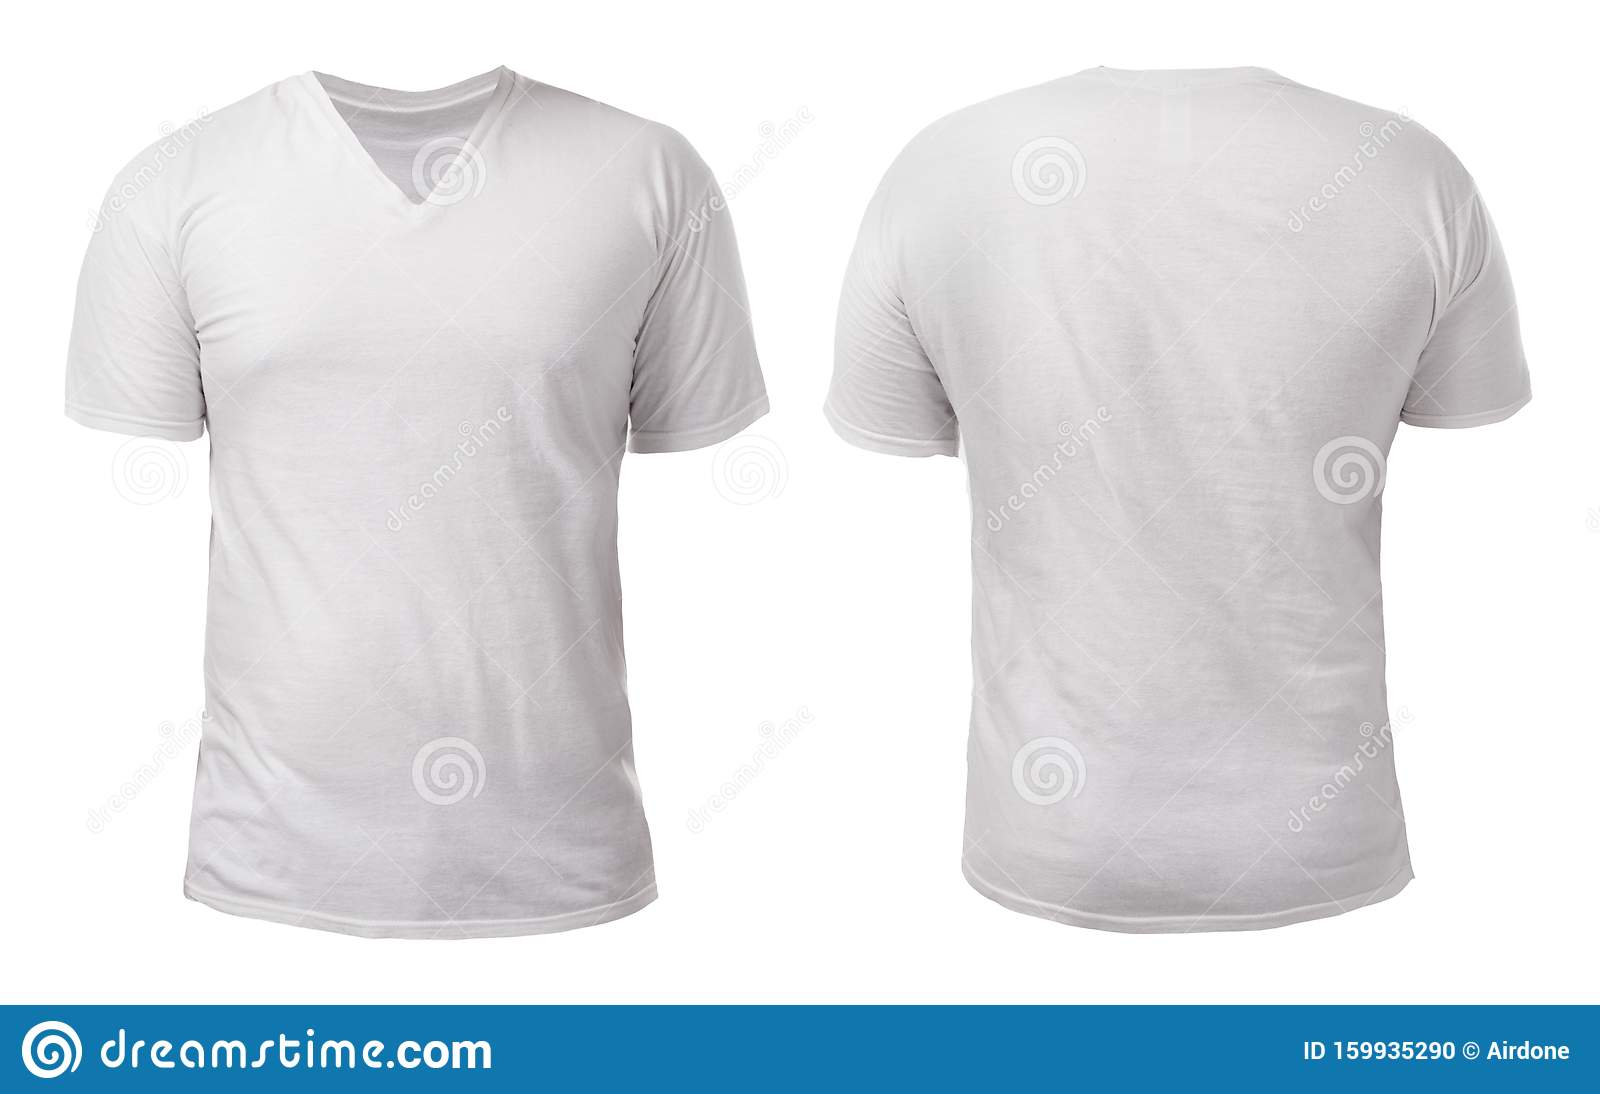 Design-Vorlage Für Ein Weißes V-Neck-Shirt Stockfoto - Bild von  Pertaining To Blank V Neck T Shirt Template